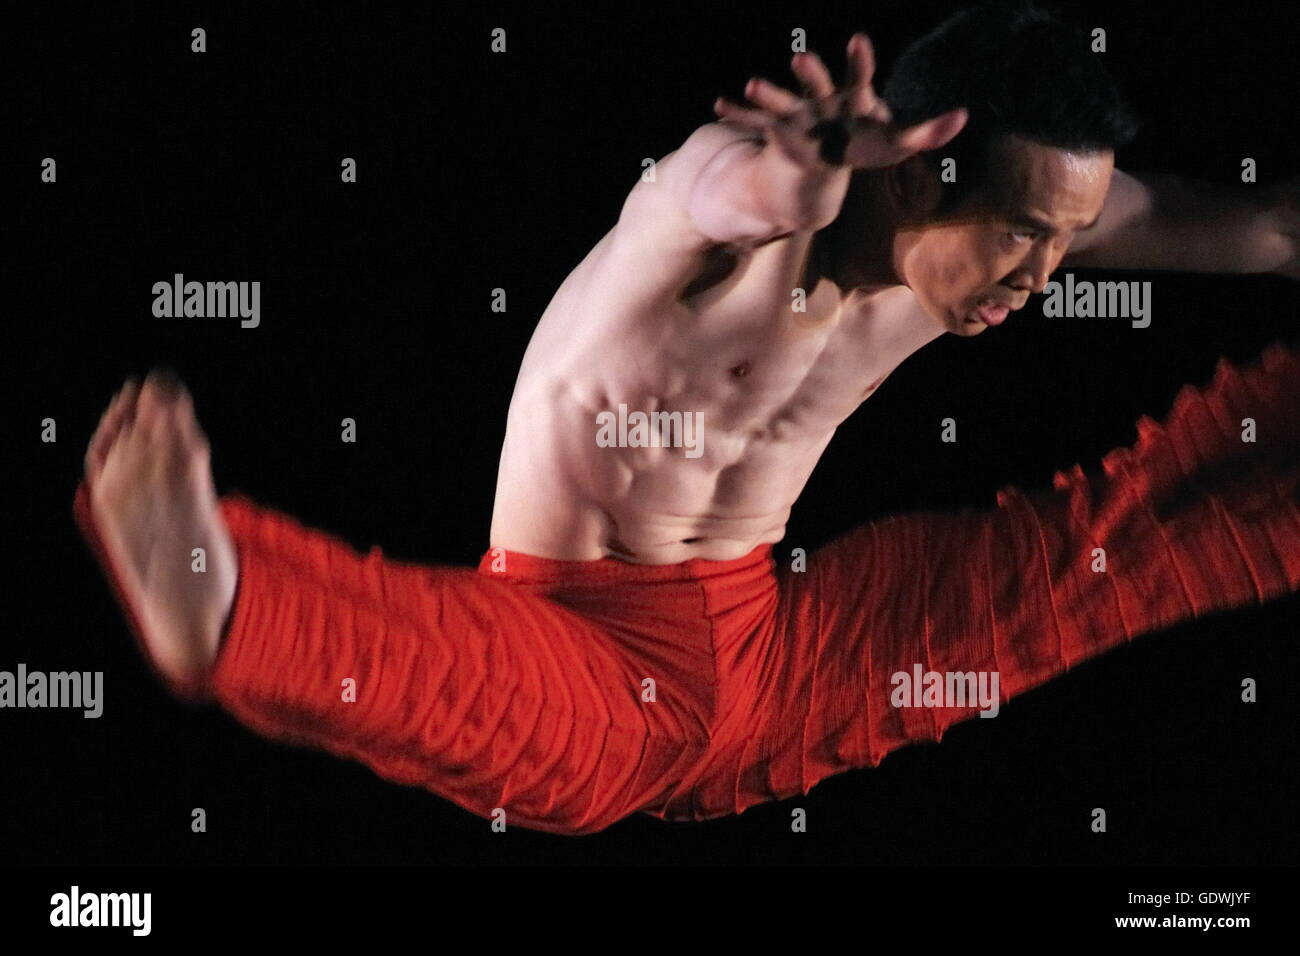 "Takademe', Alvin Ailey American Dance Theatre Foto de stock